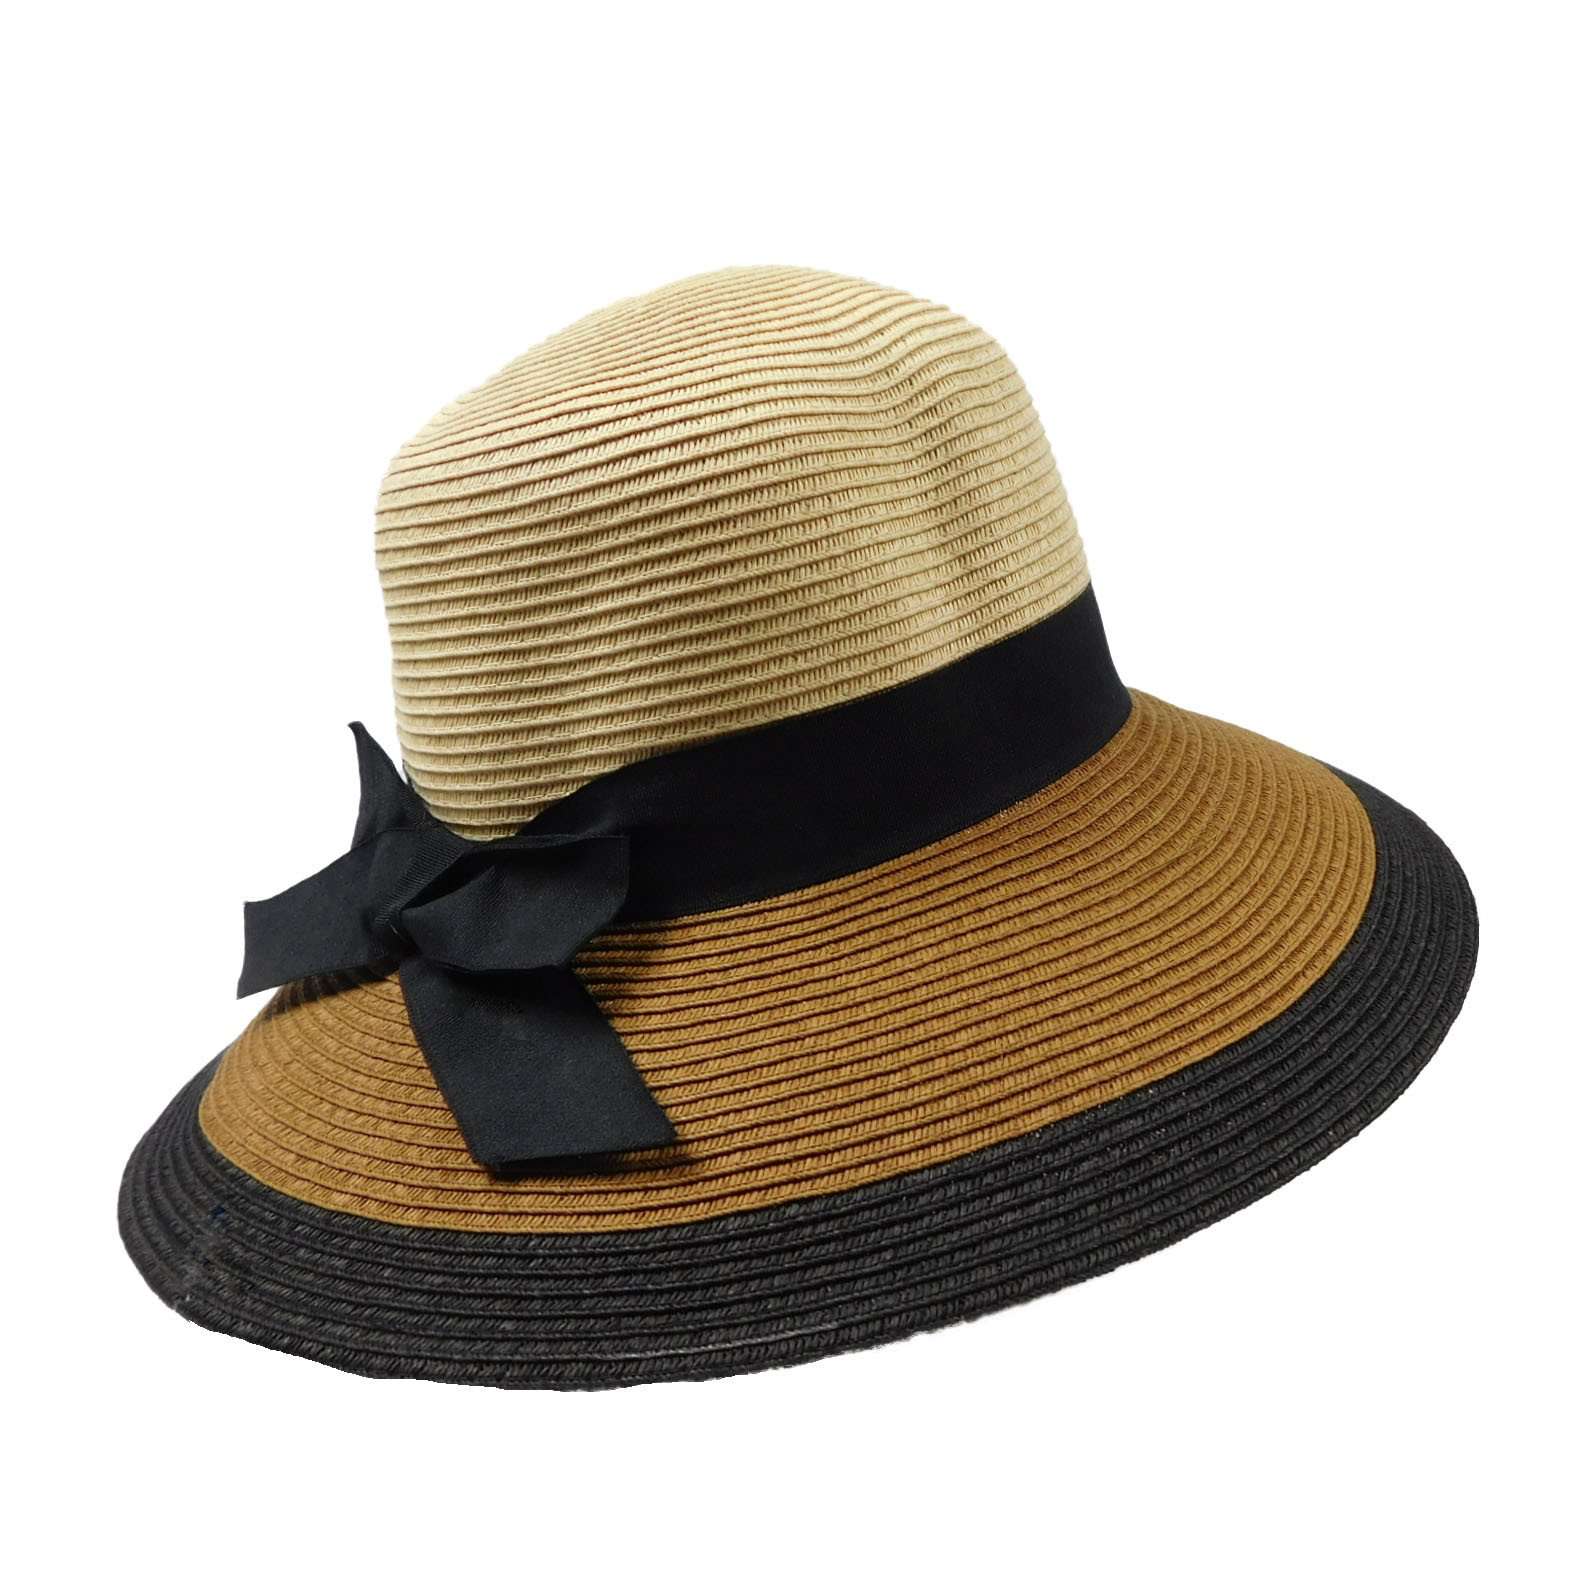 Three Tone Straw Floppy Hat, Floppy Hat - SetarTrading Hats 